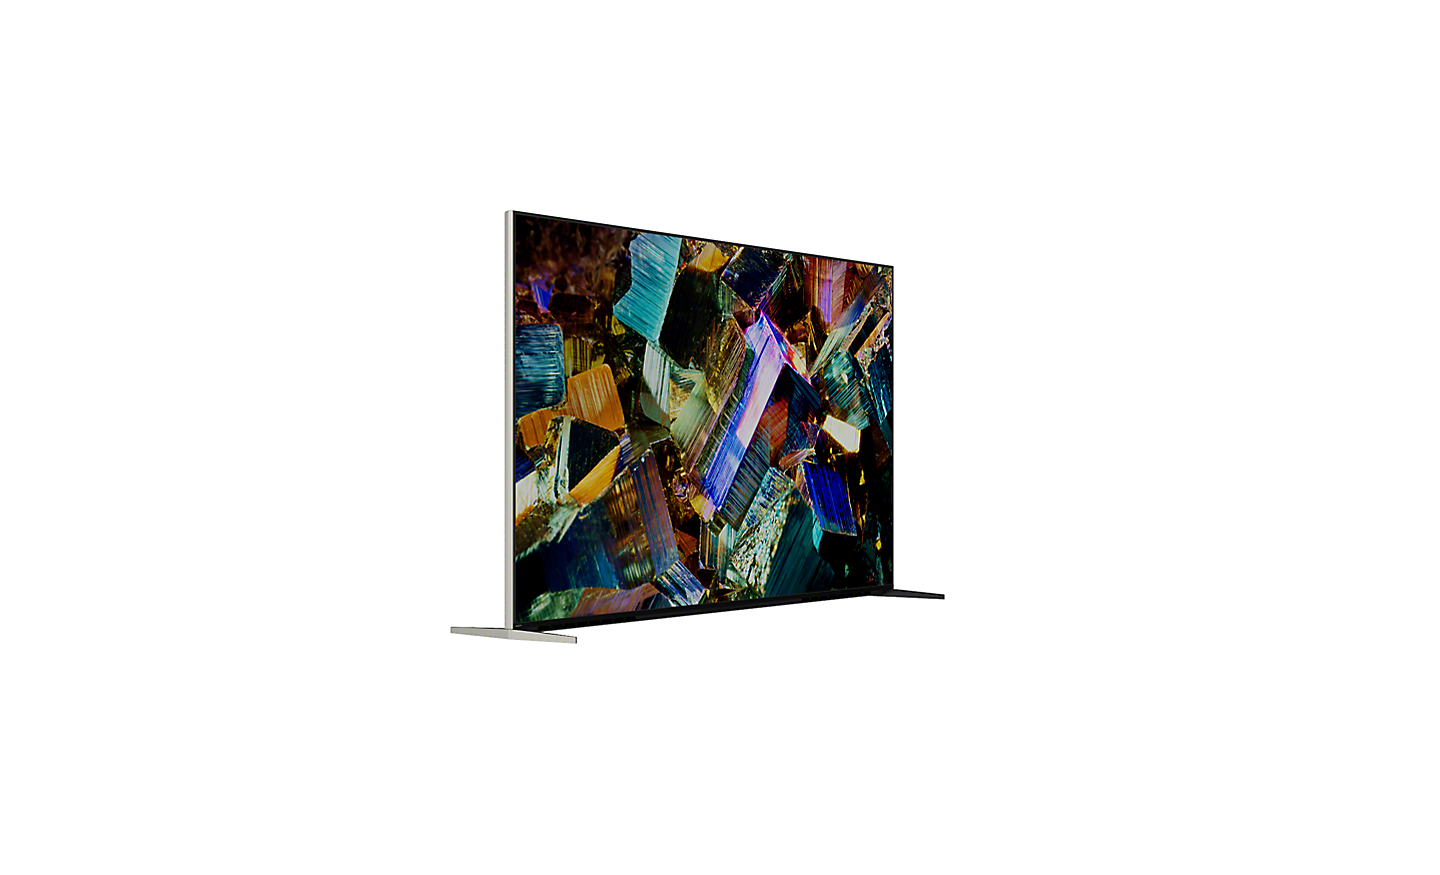 Klizni prikazivač od 360 stepeni za Z9K Series na kom se vidi TV u prikazu od 360° i snimak ekrana sa raznobojnim kristalima